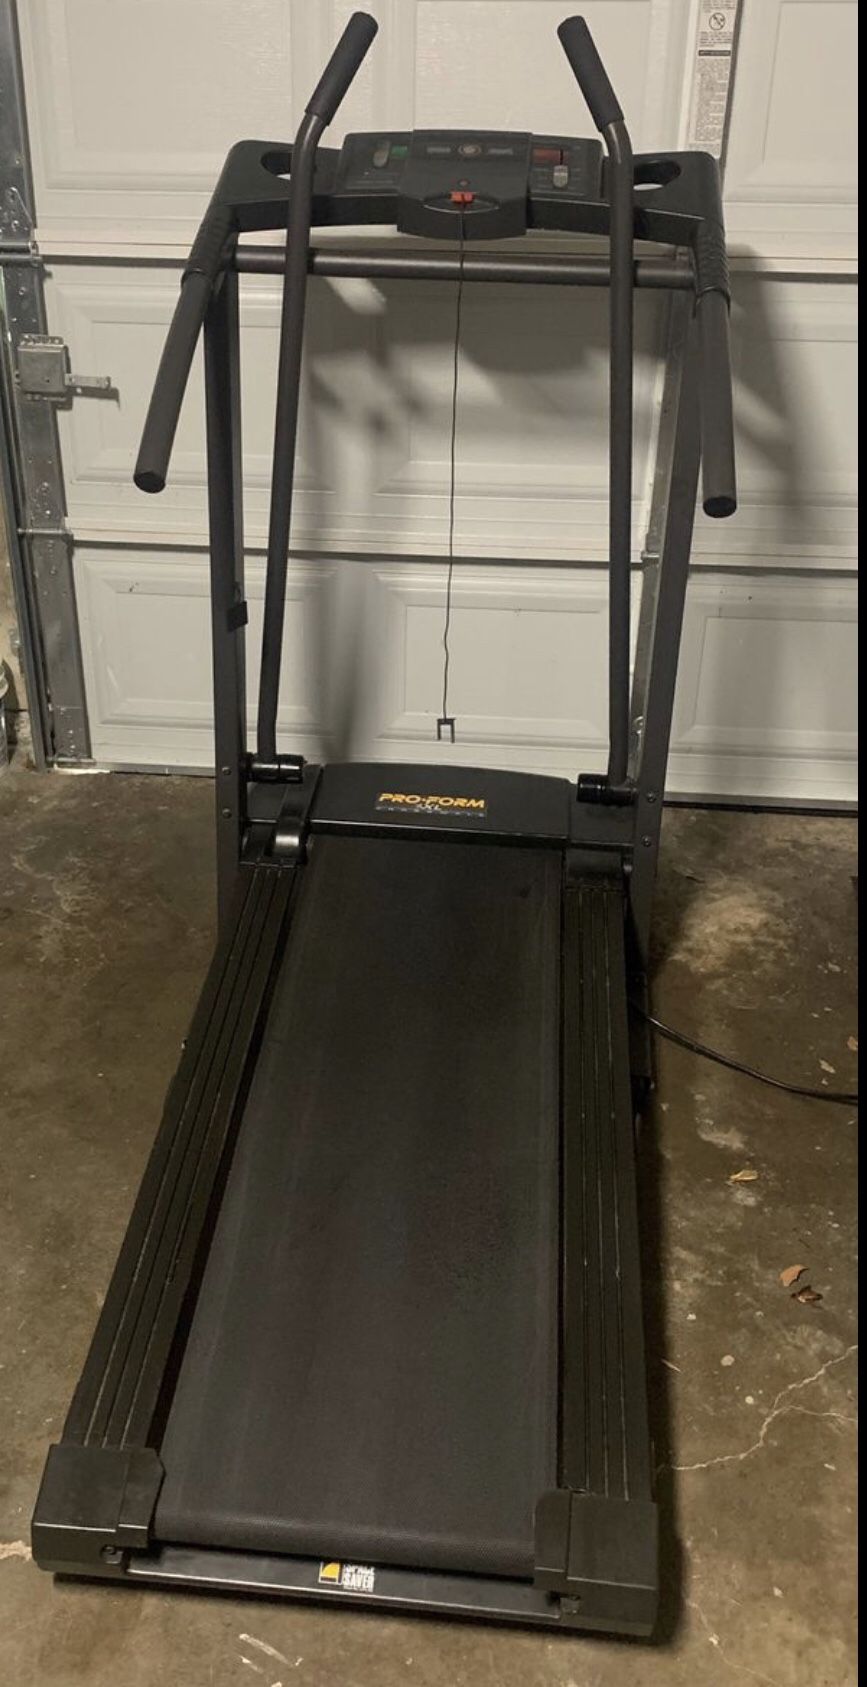 Proform treadmill/ Caminadora